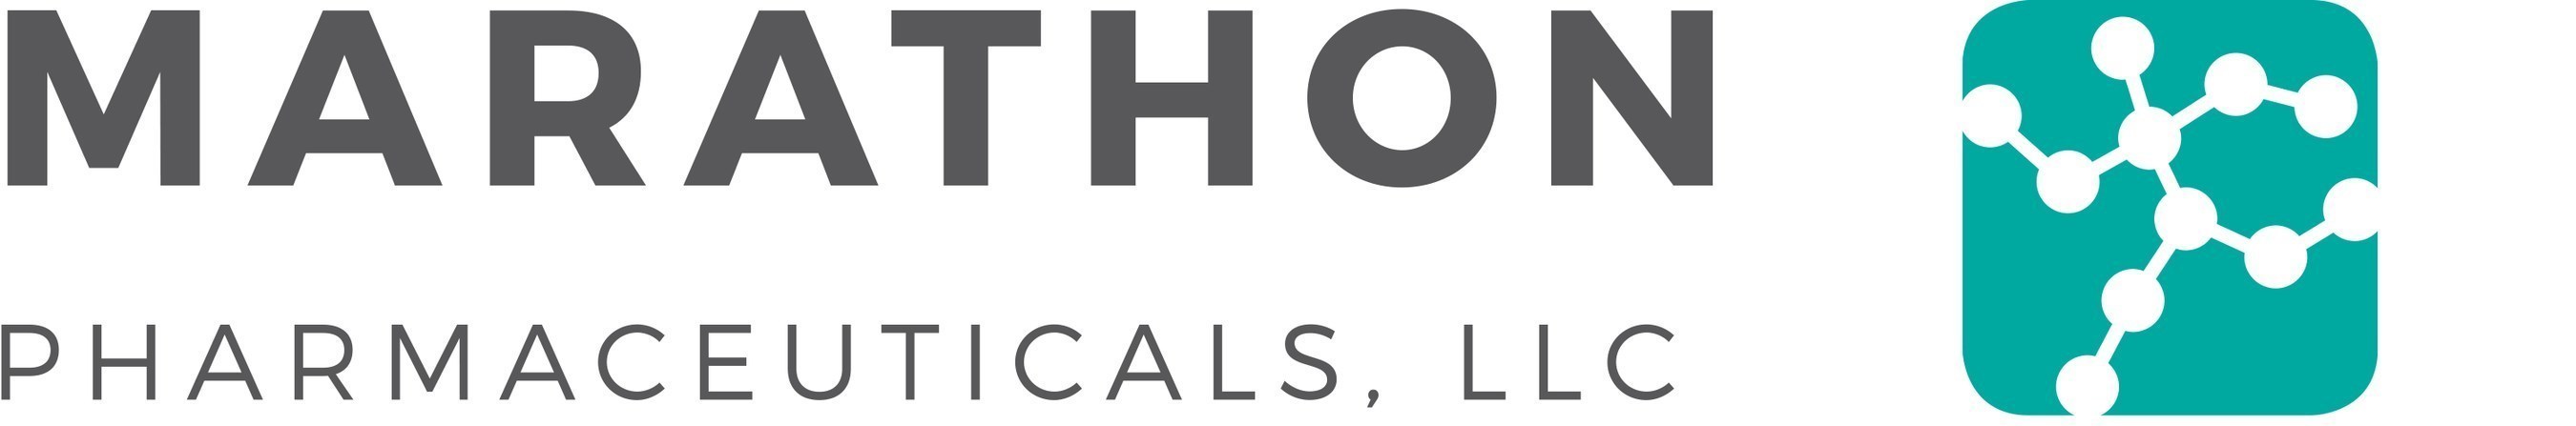 Marathon Pharmaceuticals, LLC Logo